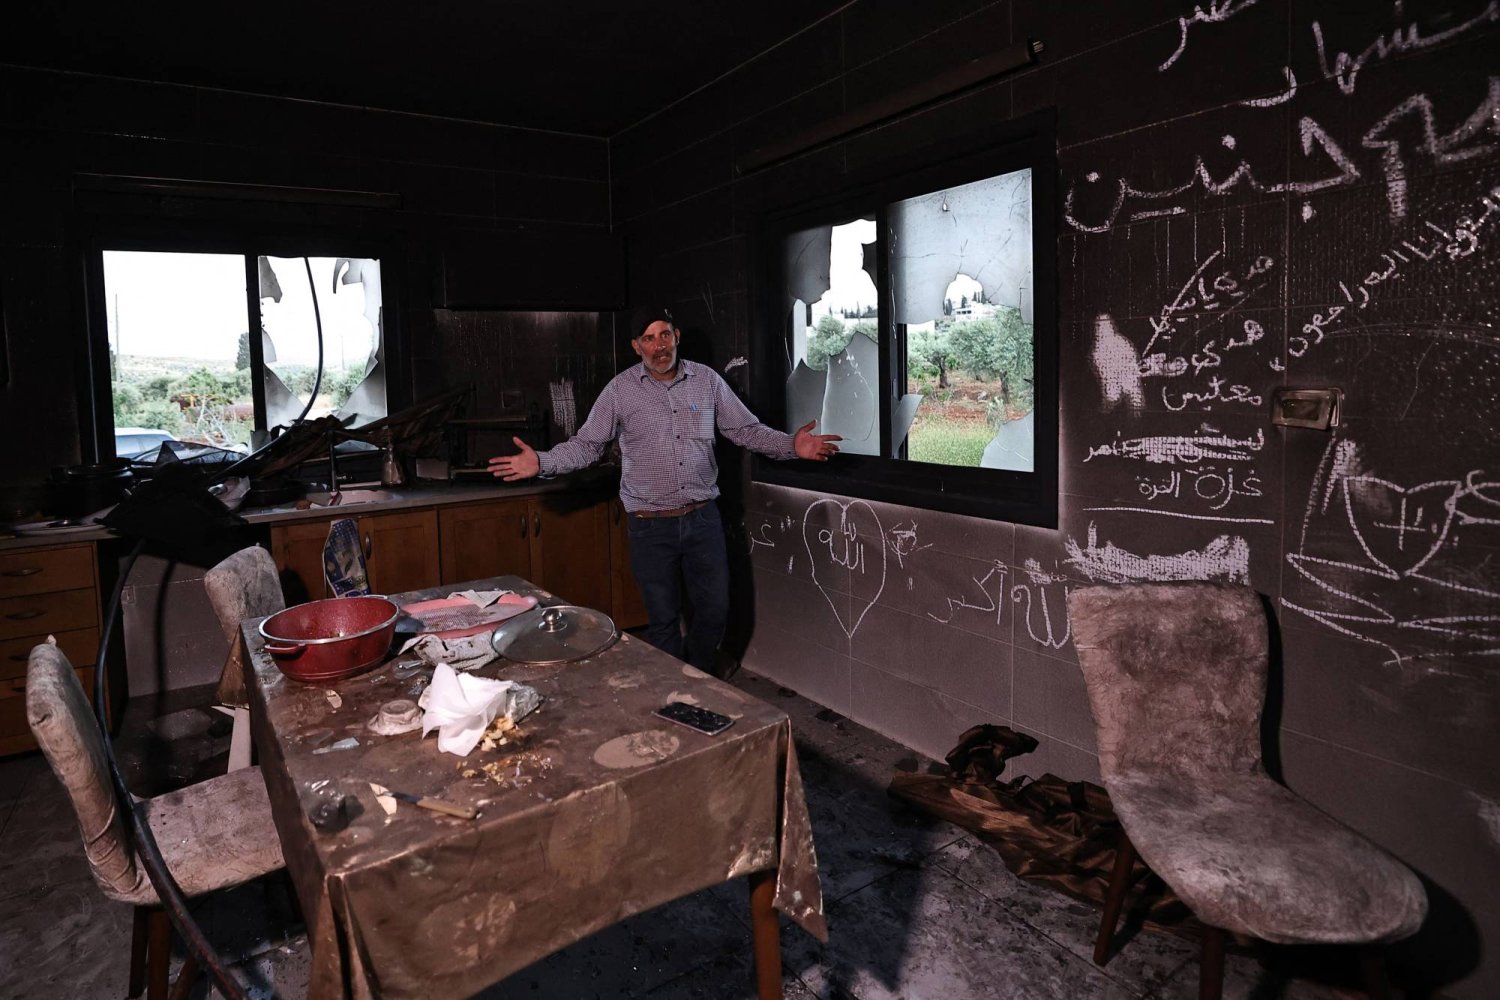 رجل فلسطيني يشير وهو يقف داخل مطبخه في أعقاب هجوم شنه مستوطنون إسرائيليون في قرية المغير بالضفة الغربية المحتلة بالقرب من رام الله (أ.ف.ب)